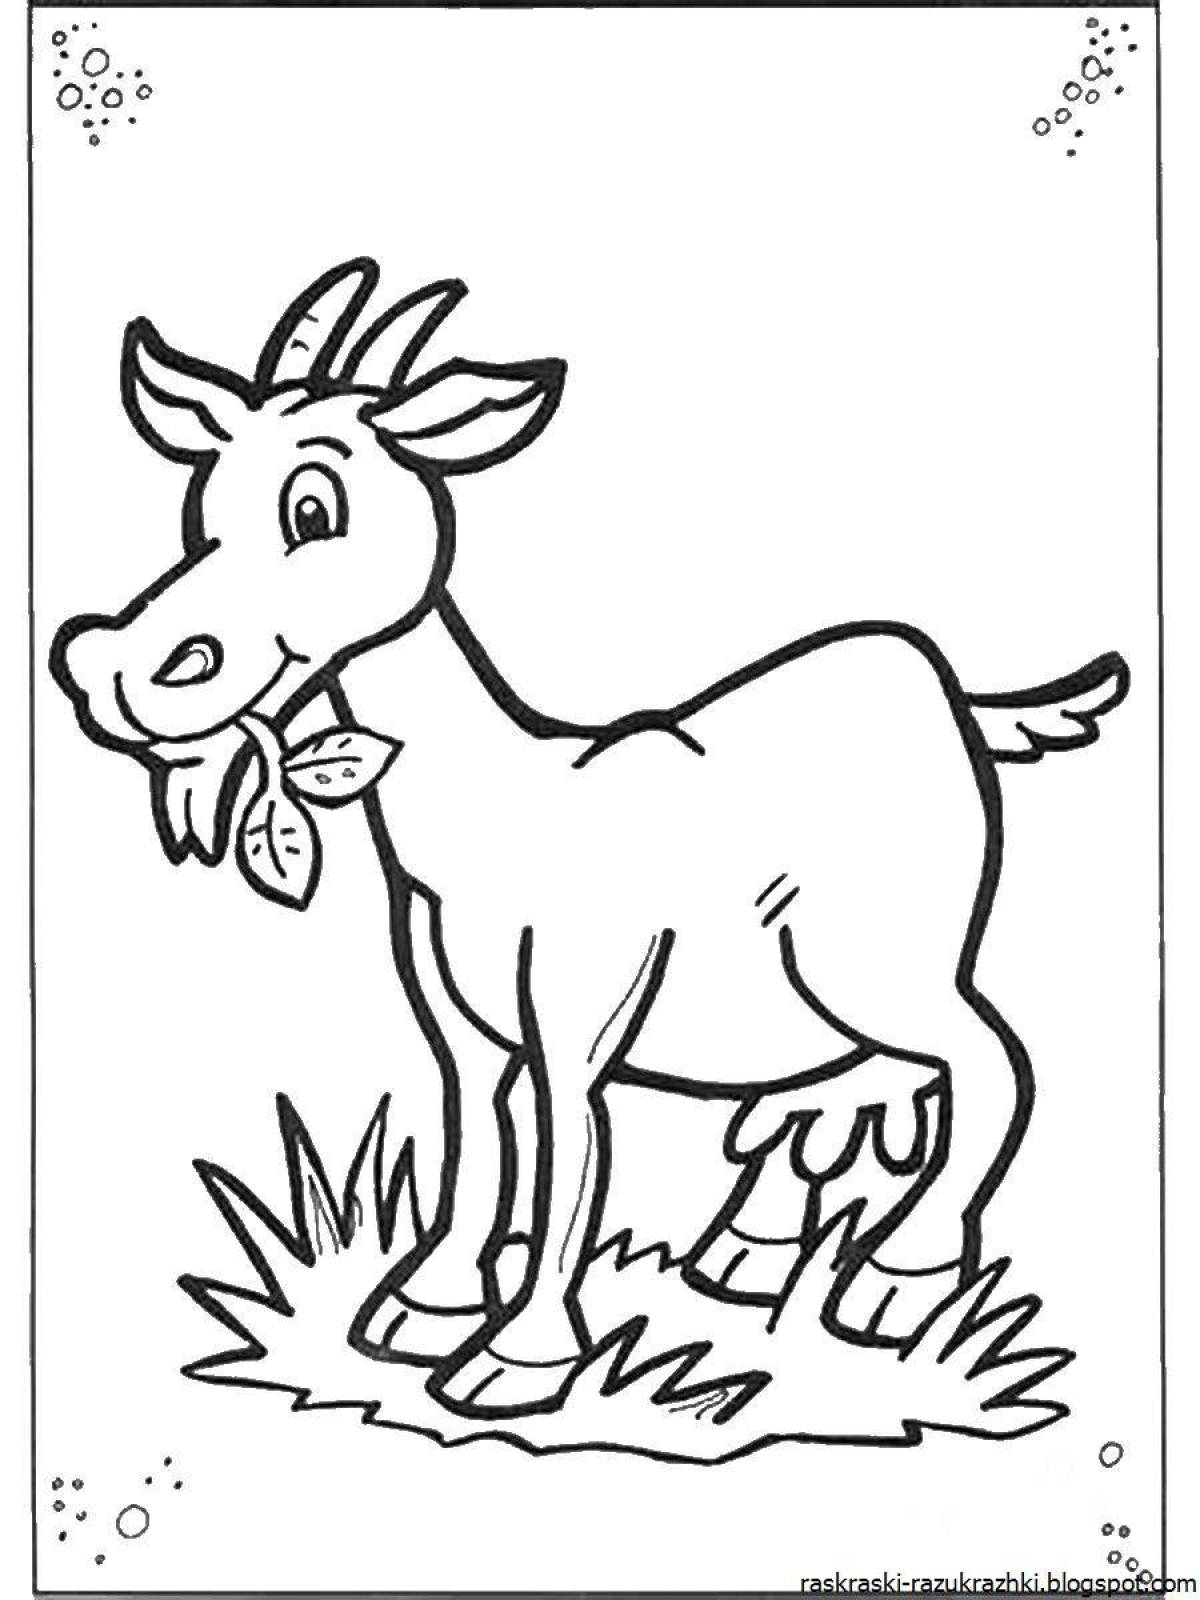 Развлекательная раскраска коз для детей